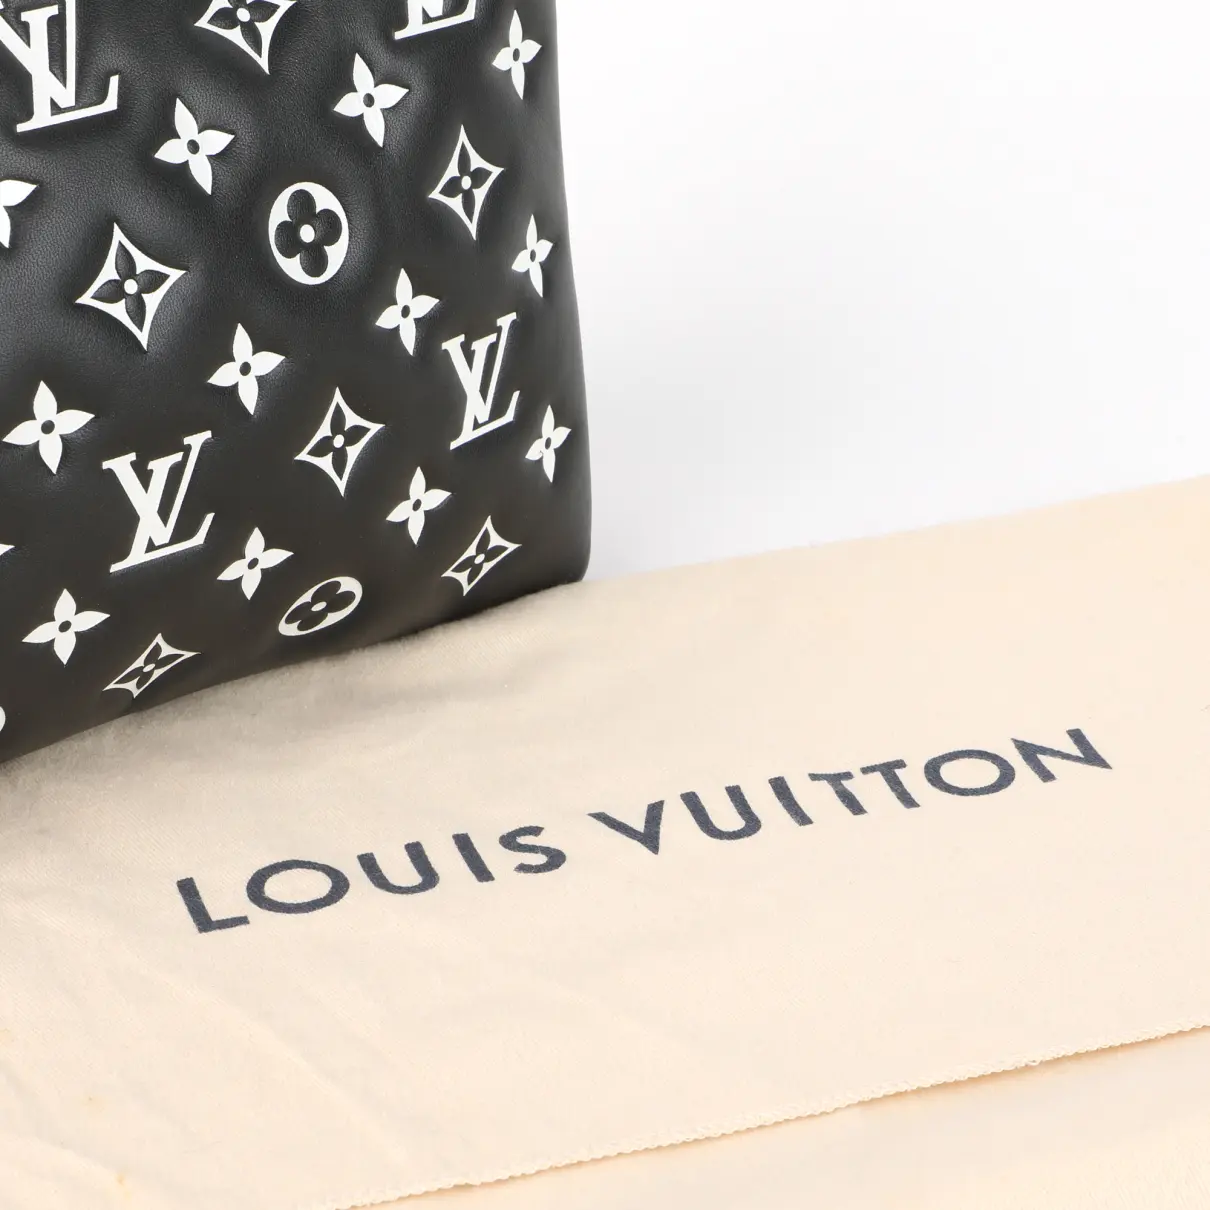 Coussin leather handbag Louis Vuitton